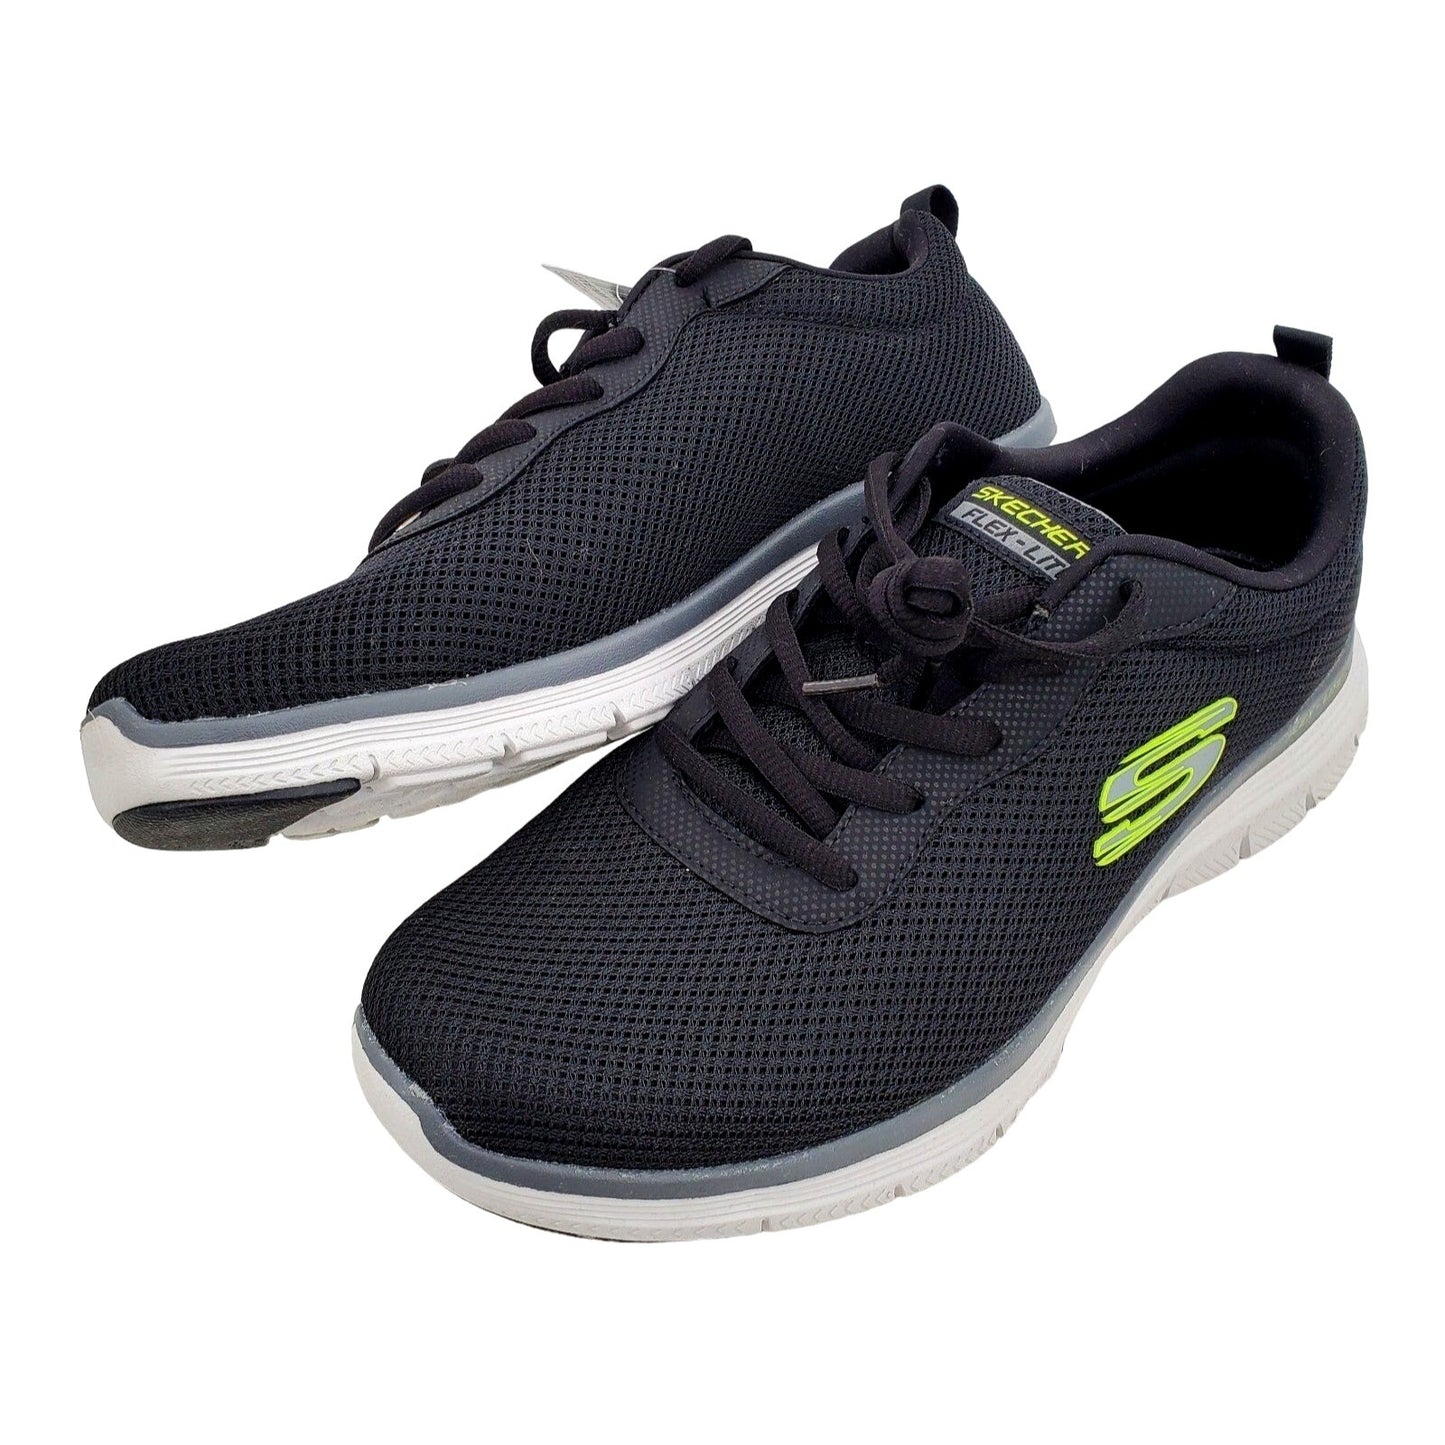 SKECHERS Sneakers Men's FLEX LITE ADVANTAGE 4.0 Activewear Athletic Shoes